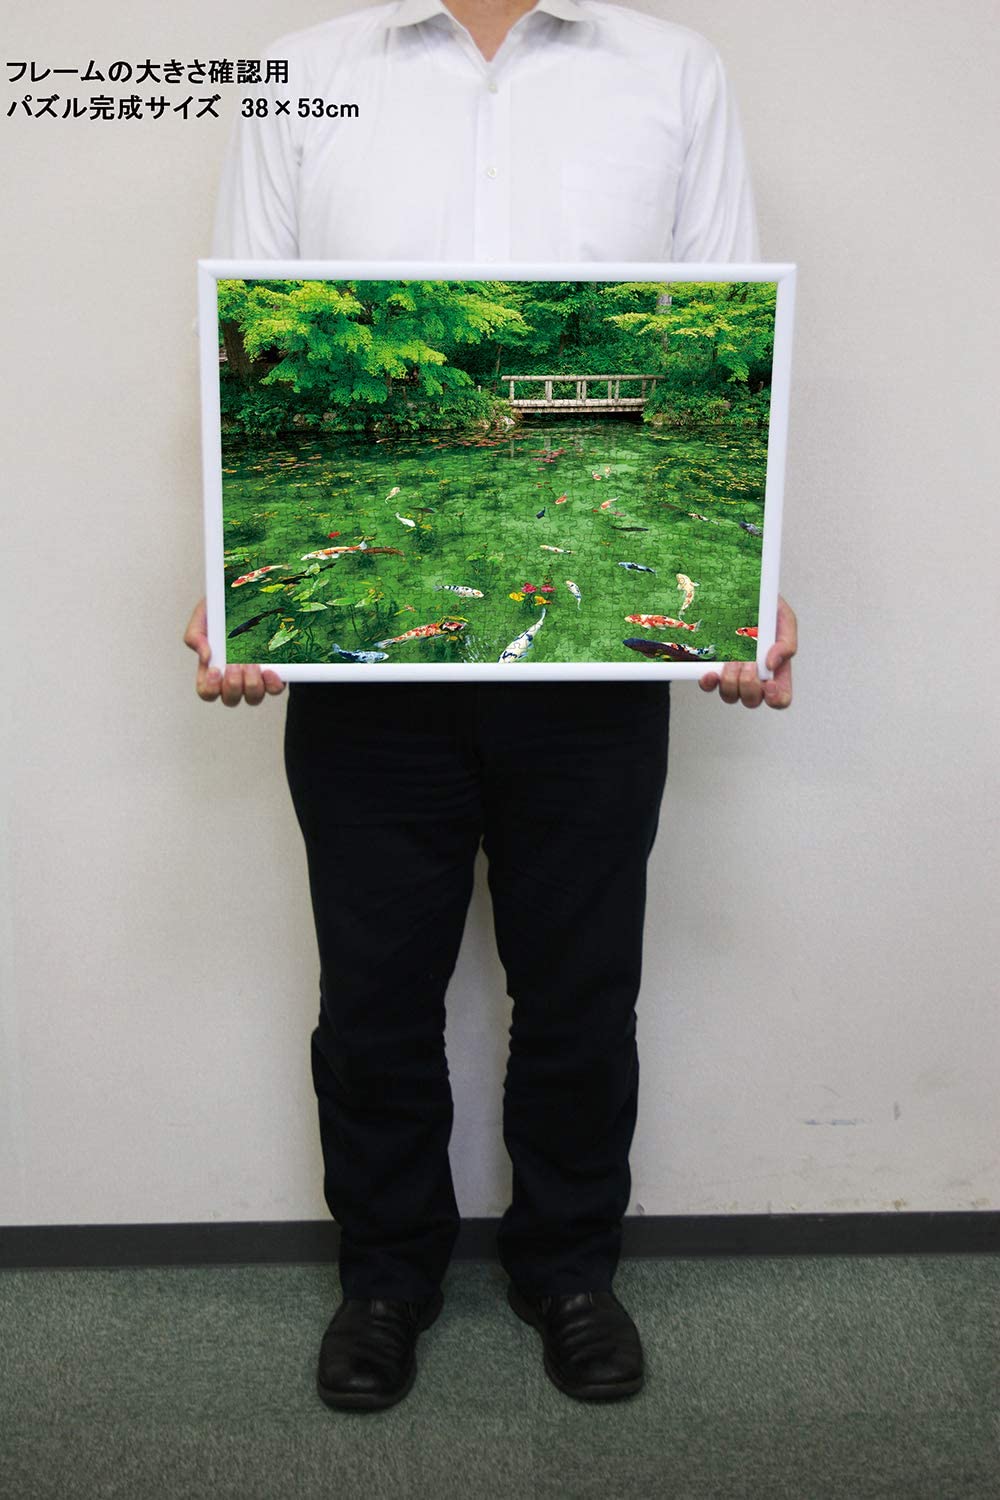 日本風景 - 莫奈顏色的舞蹈池塘 500塊 (38×53cm)